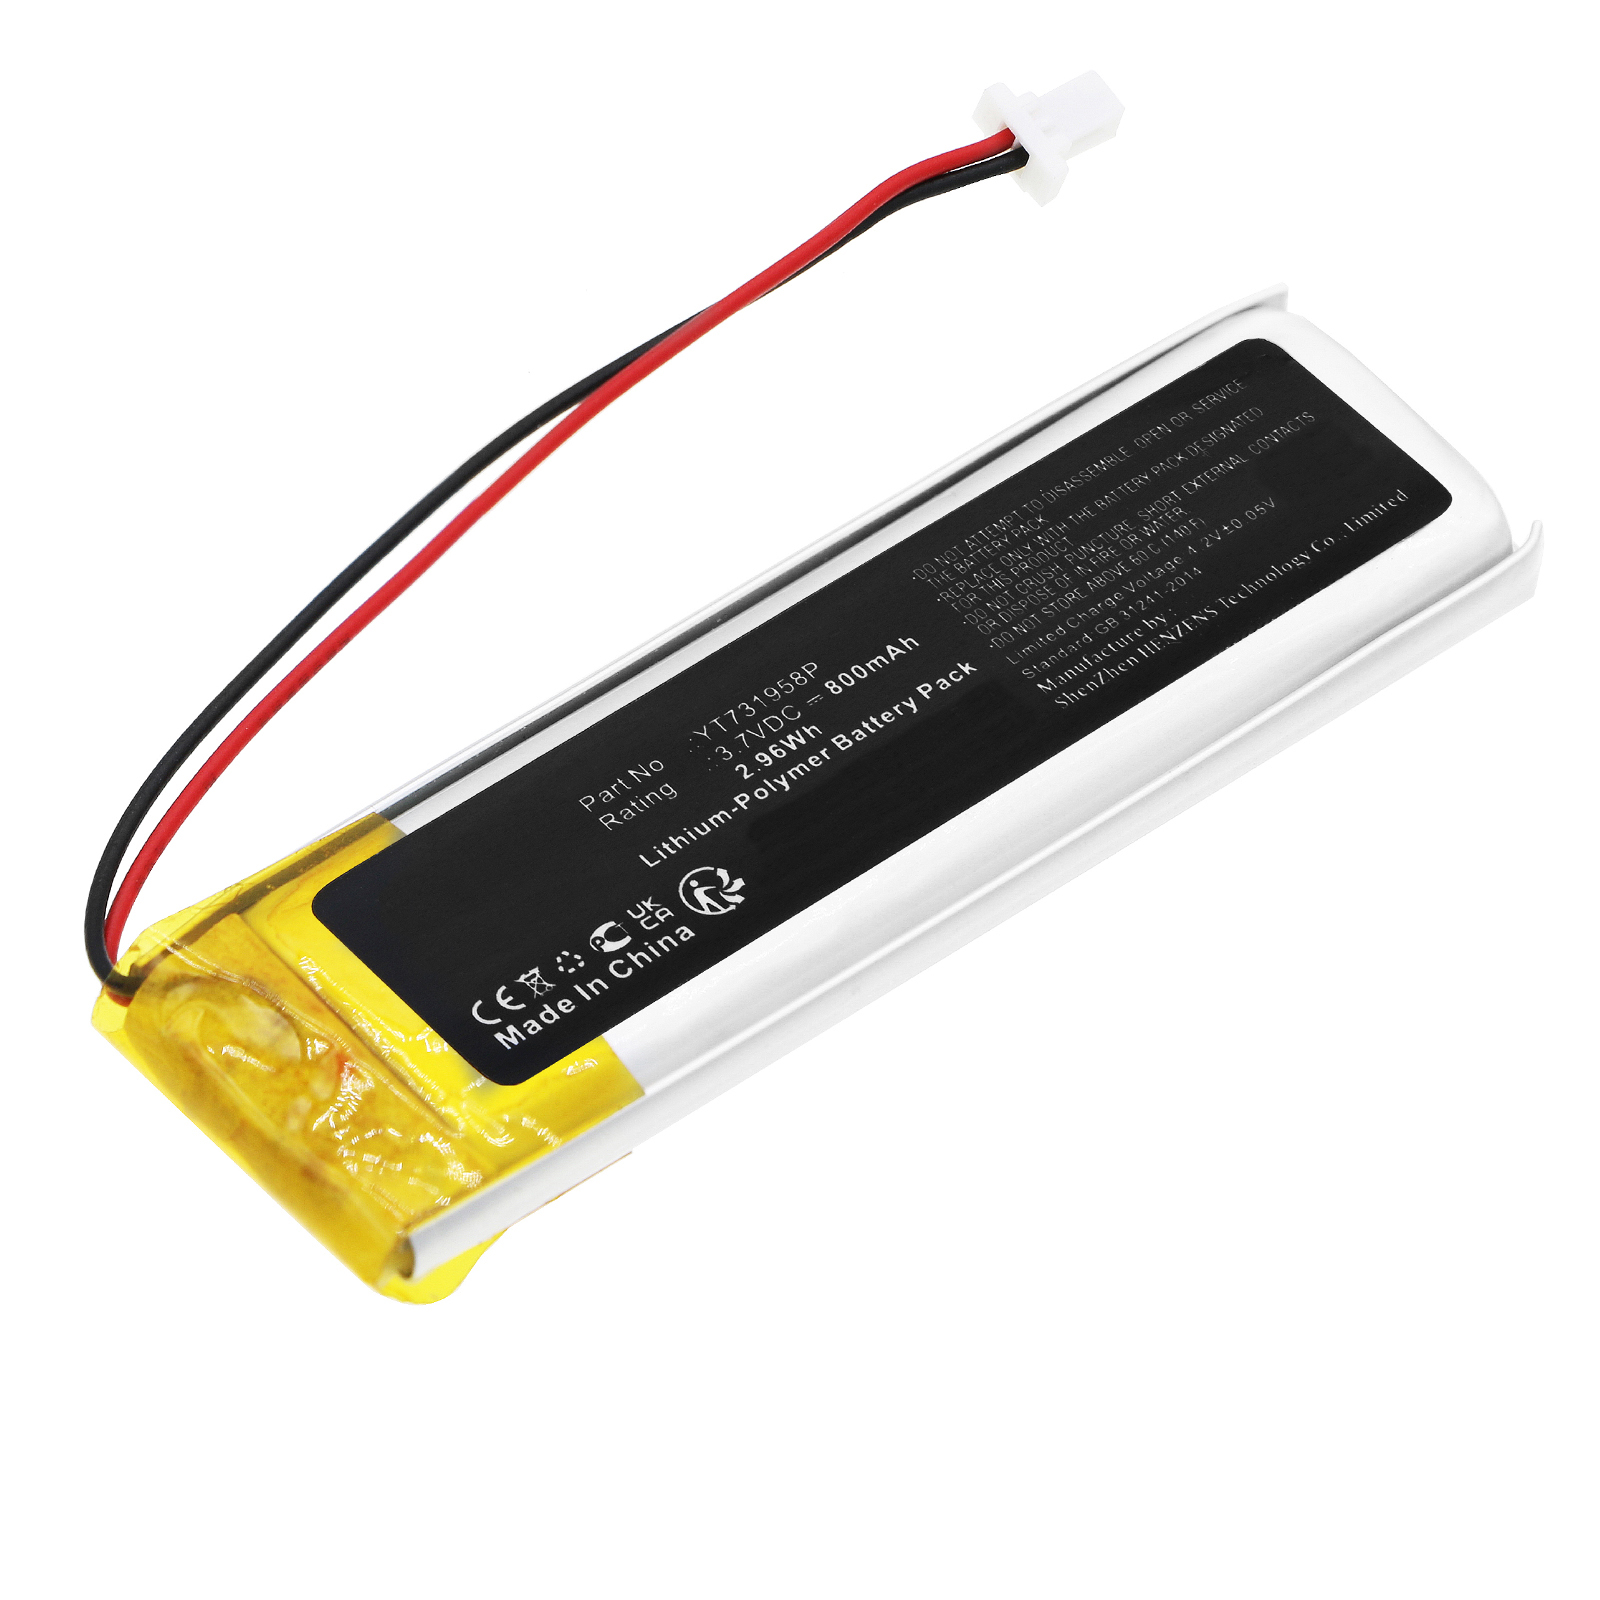 Batteries for SenaDAB Digital